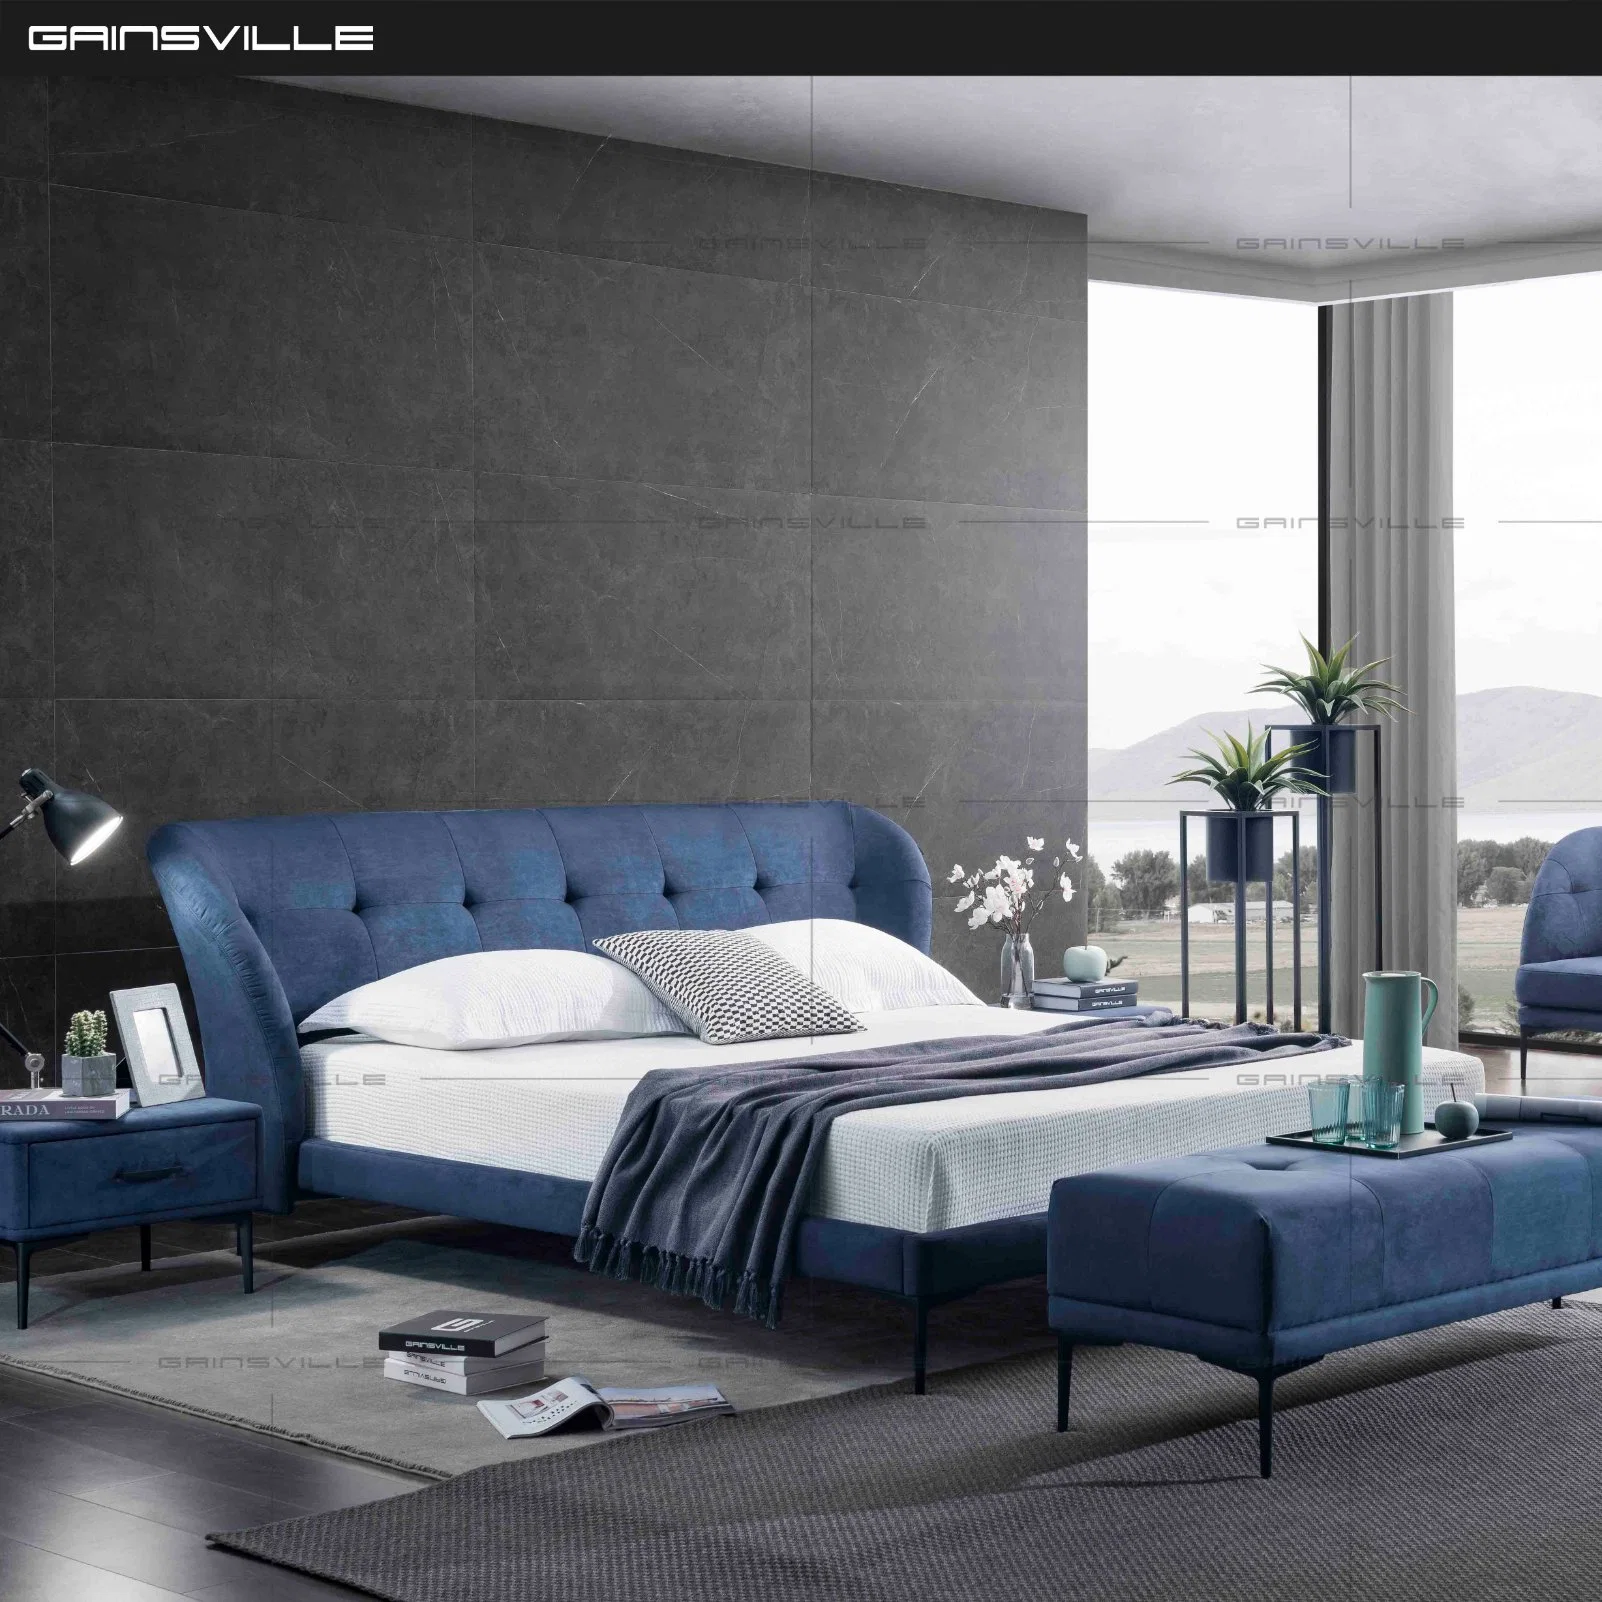 Мебель для дома Производитель Италия Бренд кровати Дизайн Спальня Кровать king-size с привитым ведущим кроватью